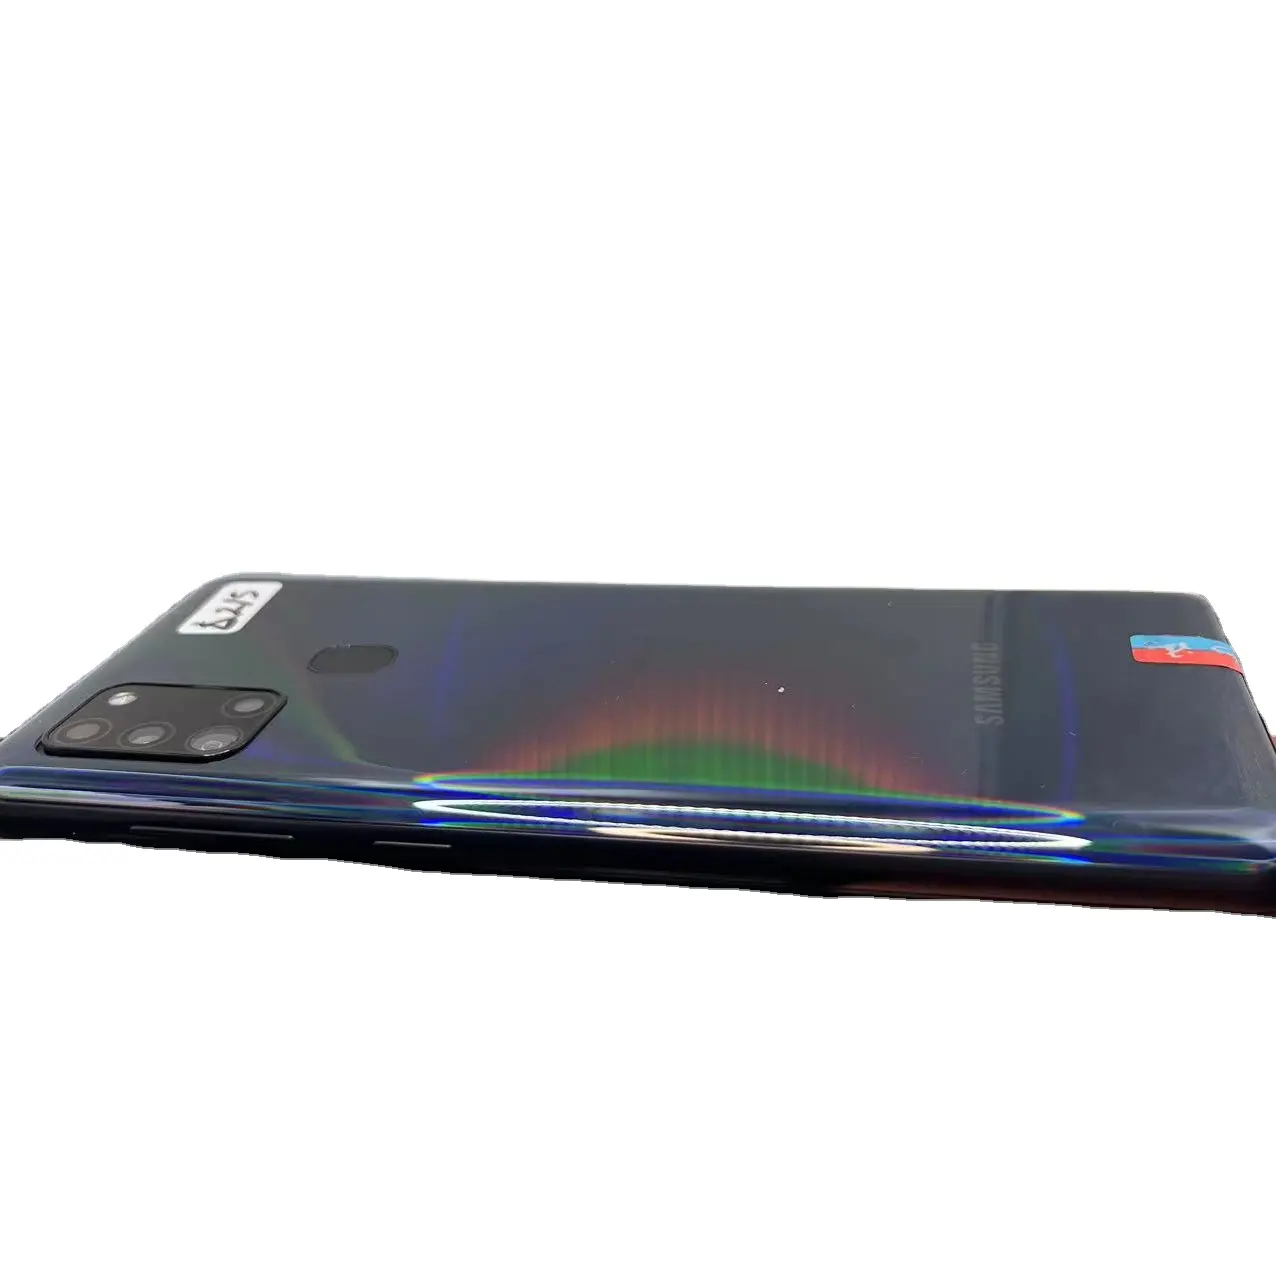 100% Original desbloqueado usado teléfono móvil Octa-core A9 Pro Android teléfono celular para Samsung Galaxy A8s